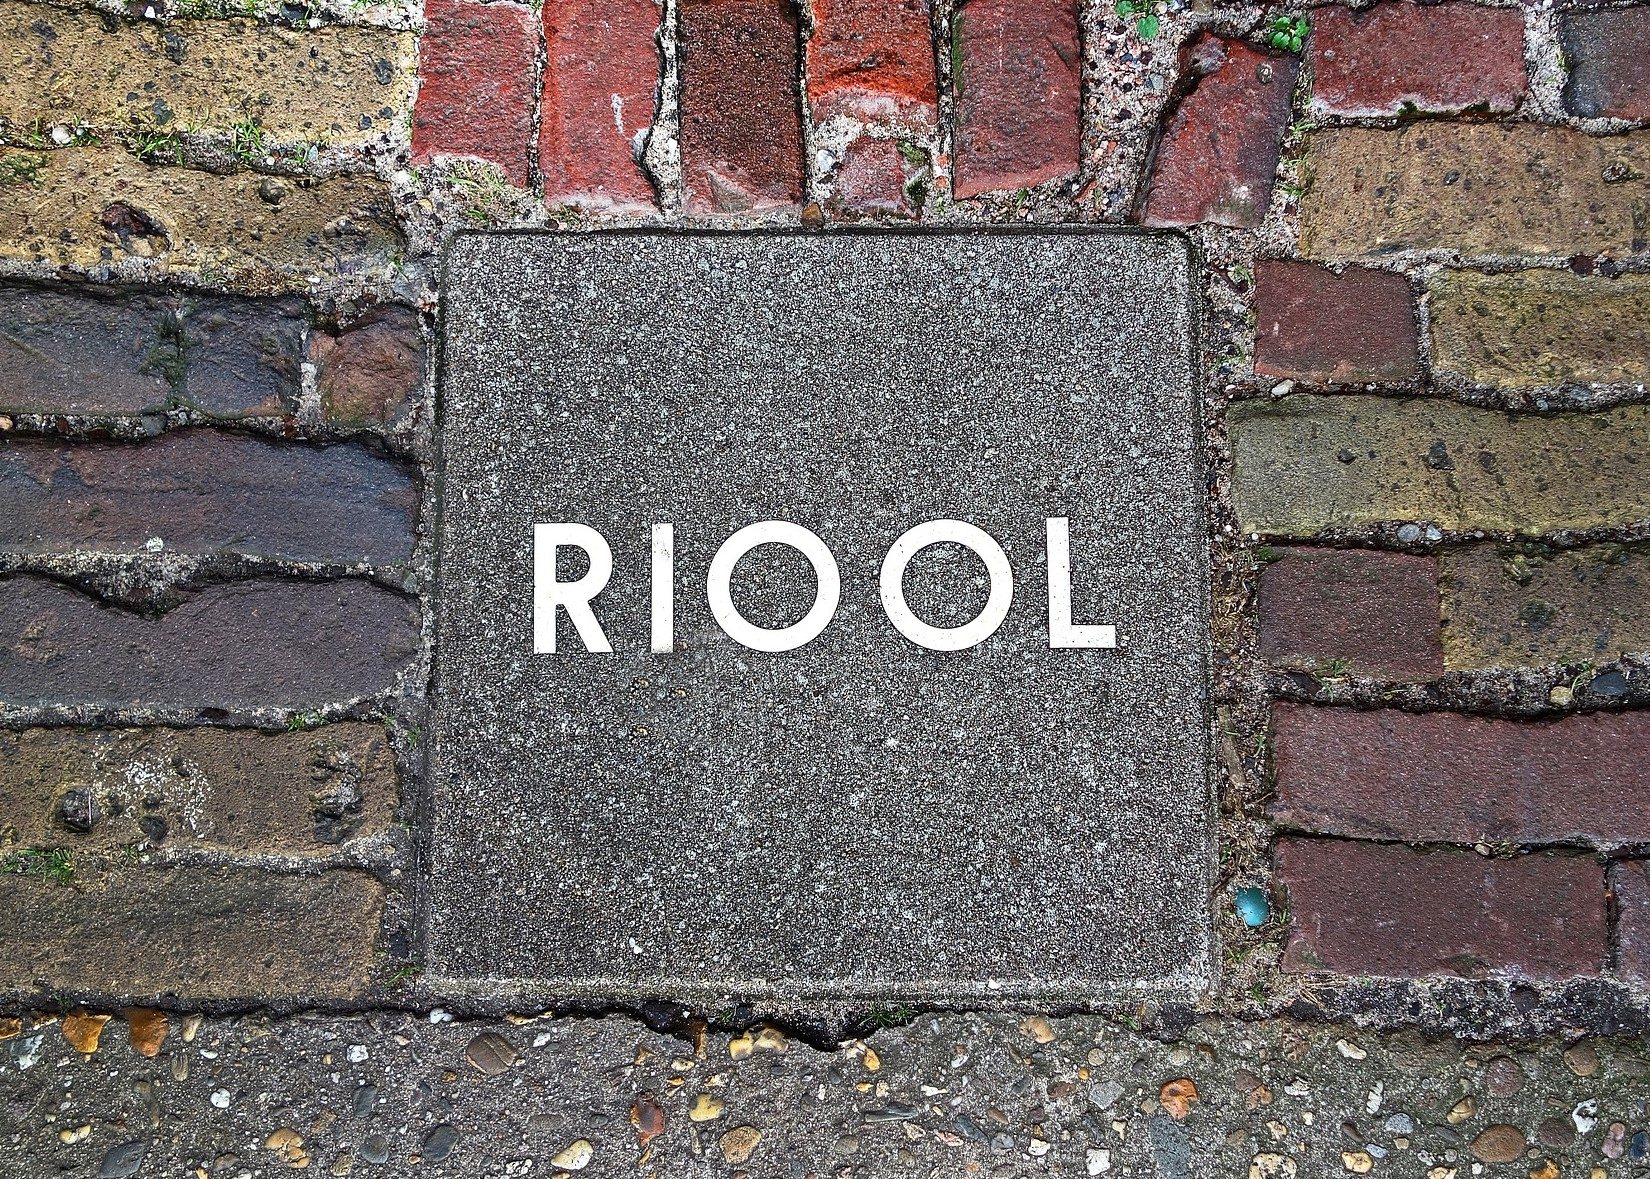 Rioolwater - Foto: MabelAmber (Pixabay)